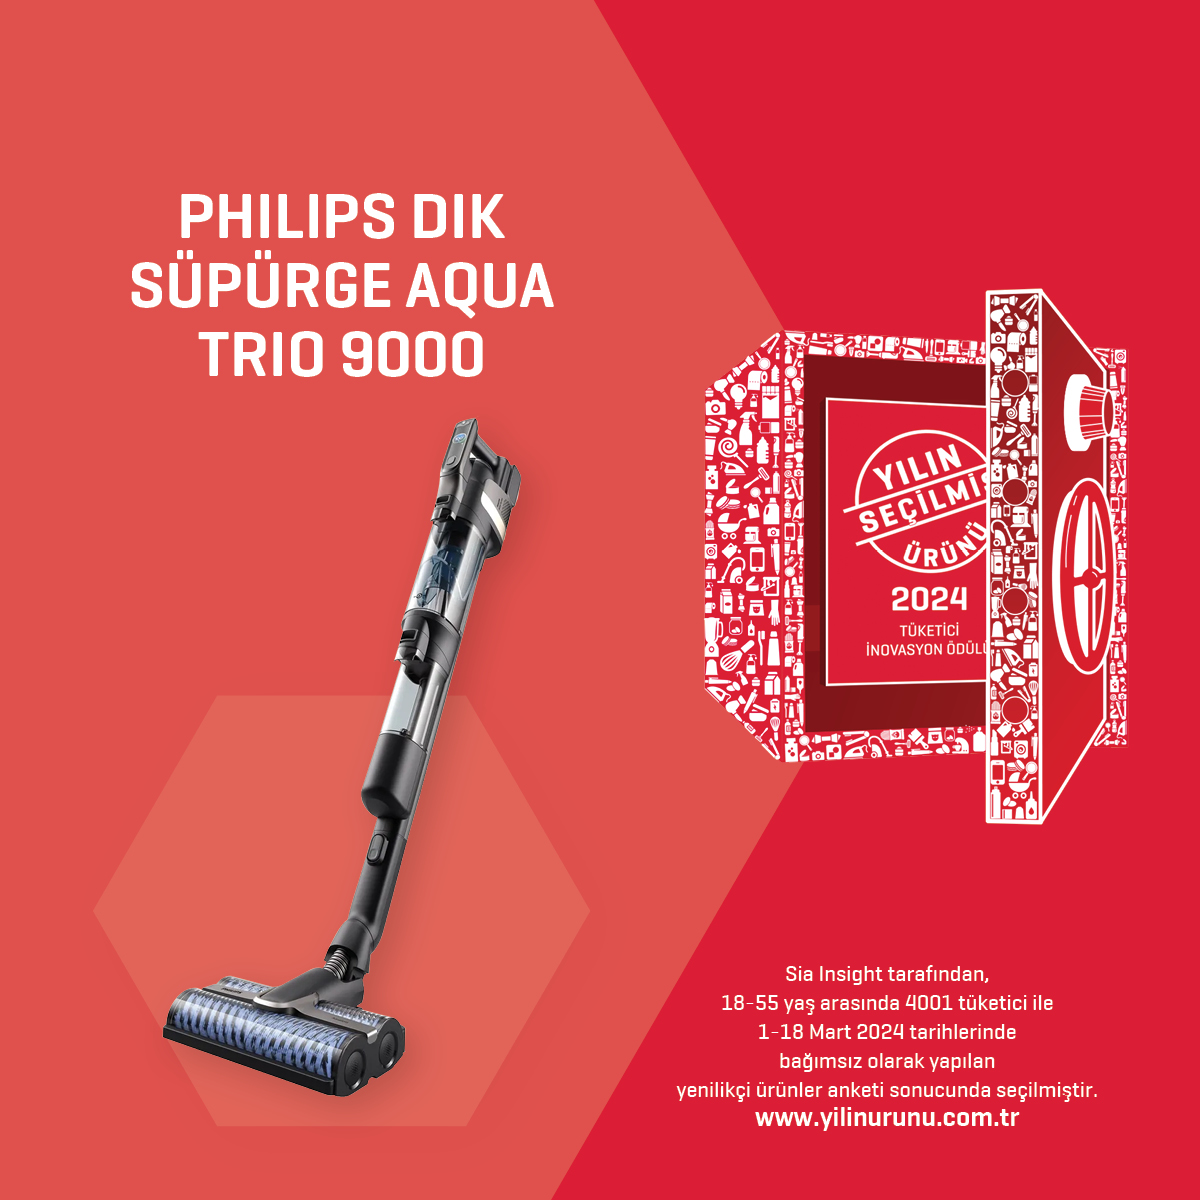 Philips Dik Süpürge Aqua Trio 9000